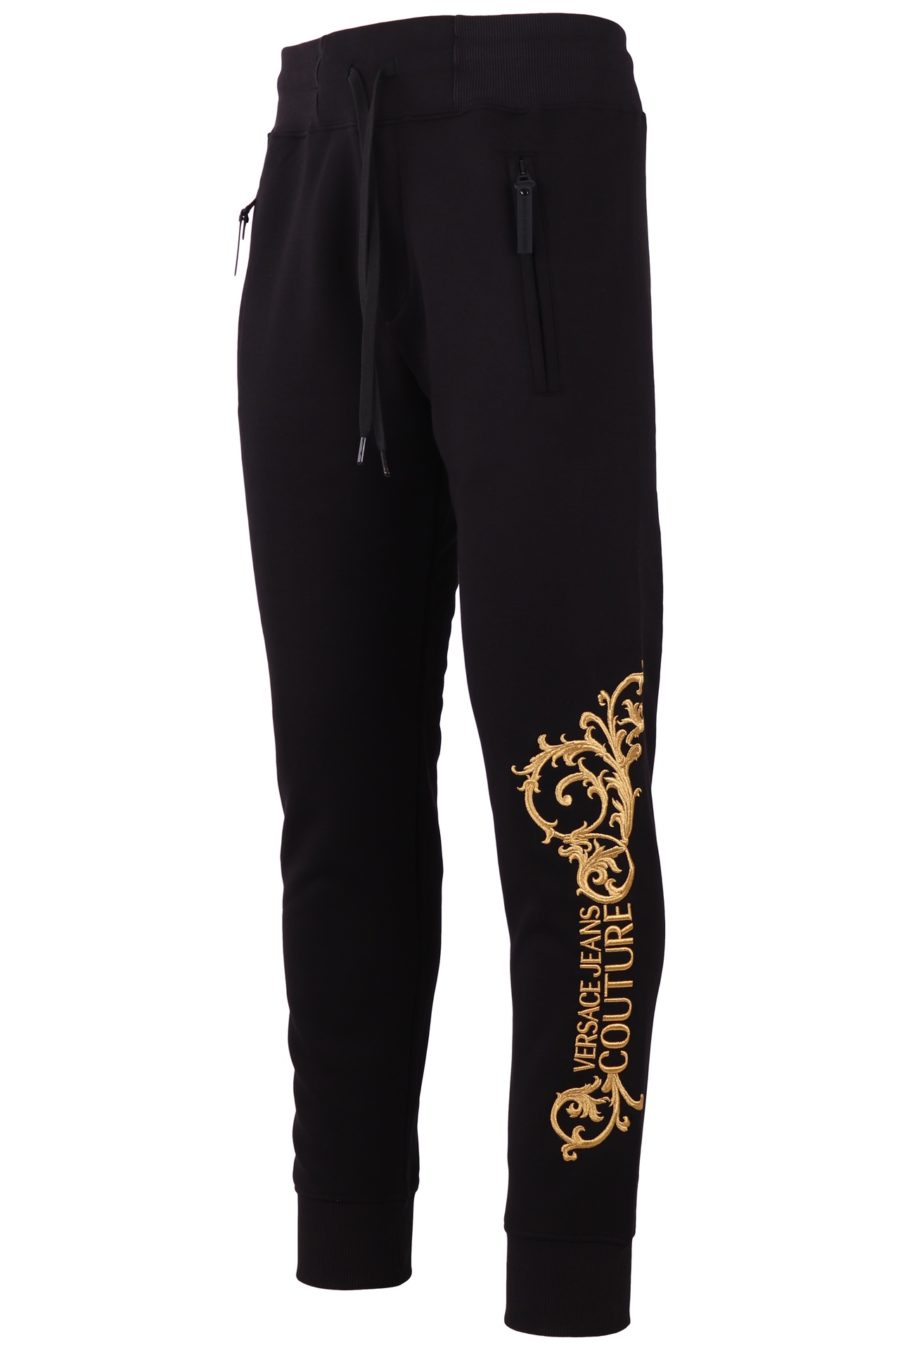 Pantalón de chándal Versace Jeans Couture de color negro con logo bordado - fe7a5f5e0da208370e17f3c9ec5cebc2a92d38a5